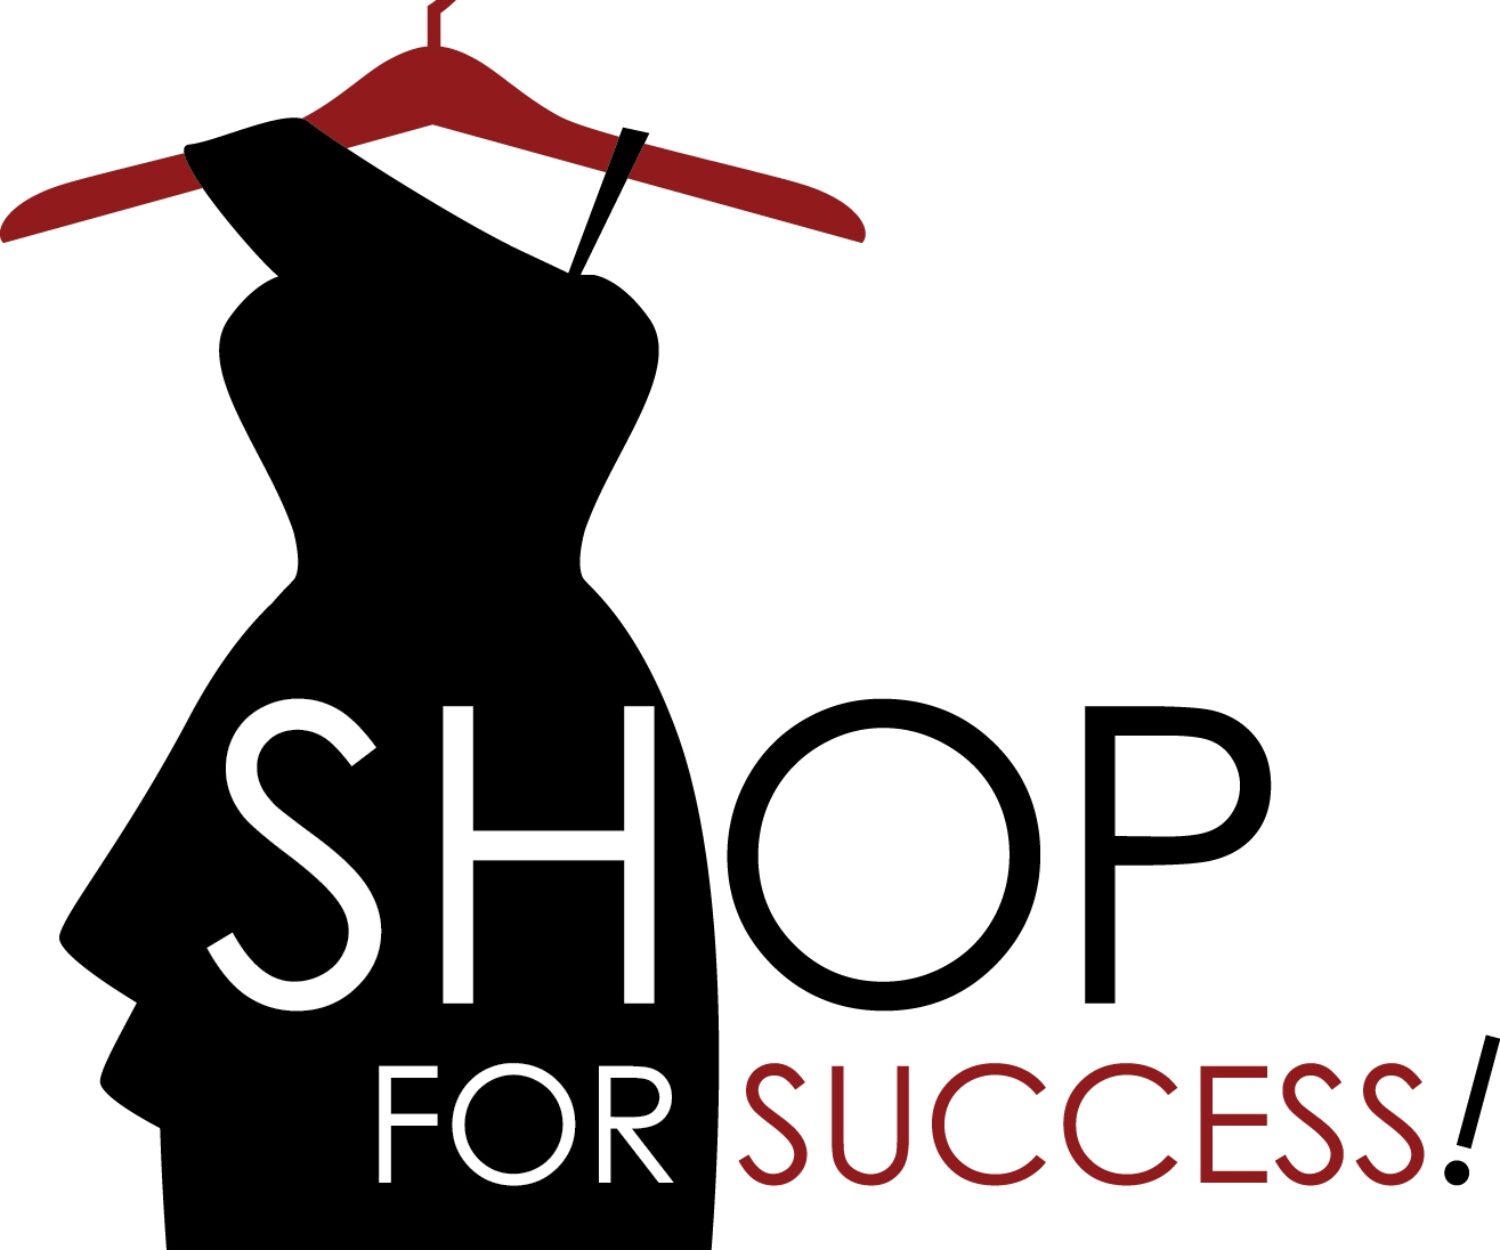 To be woman shop. Логотип для магазина женской одежды. Логопим женской одежды. Магазин одежды логотип стильный. Логотип дизайнера одежды.